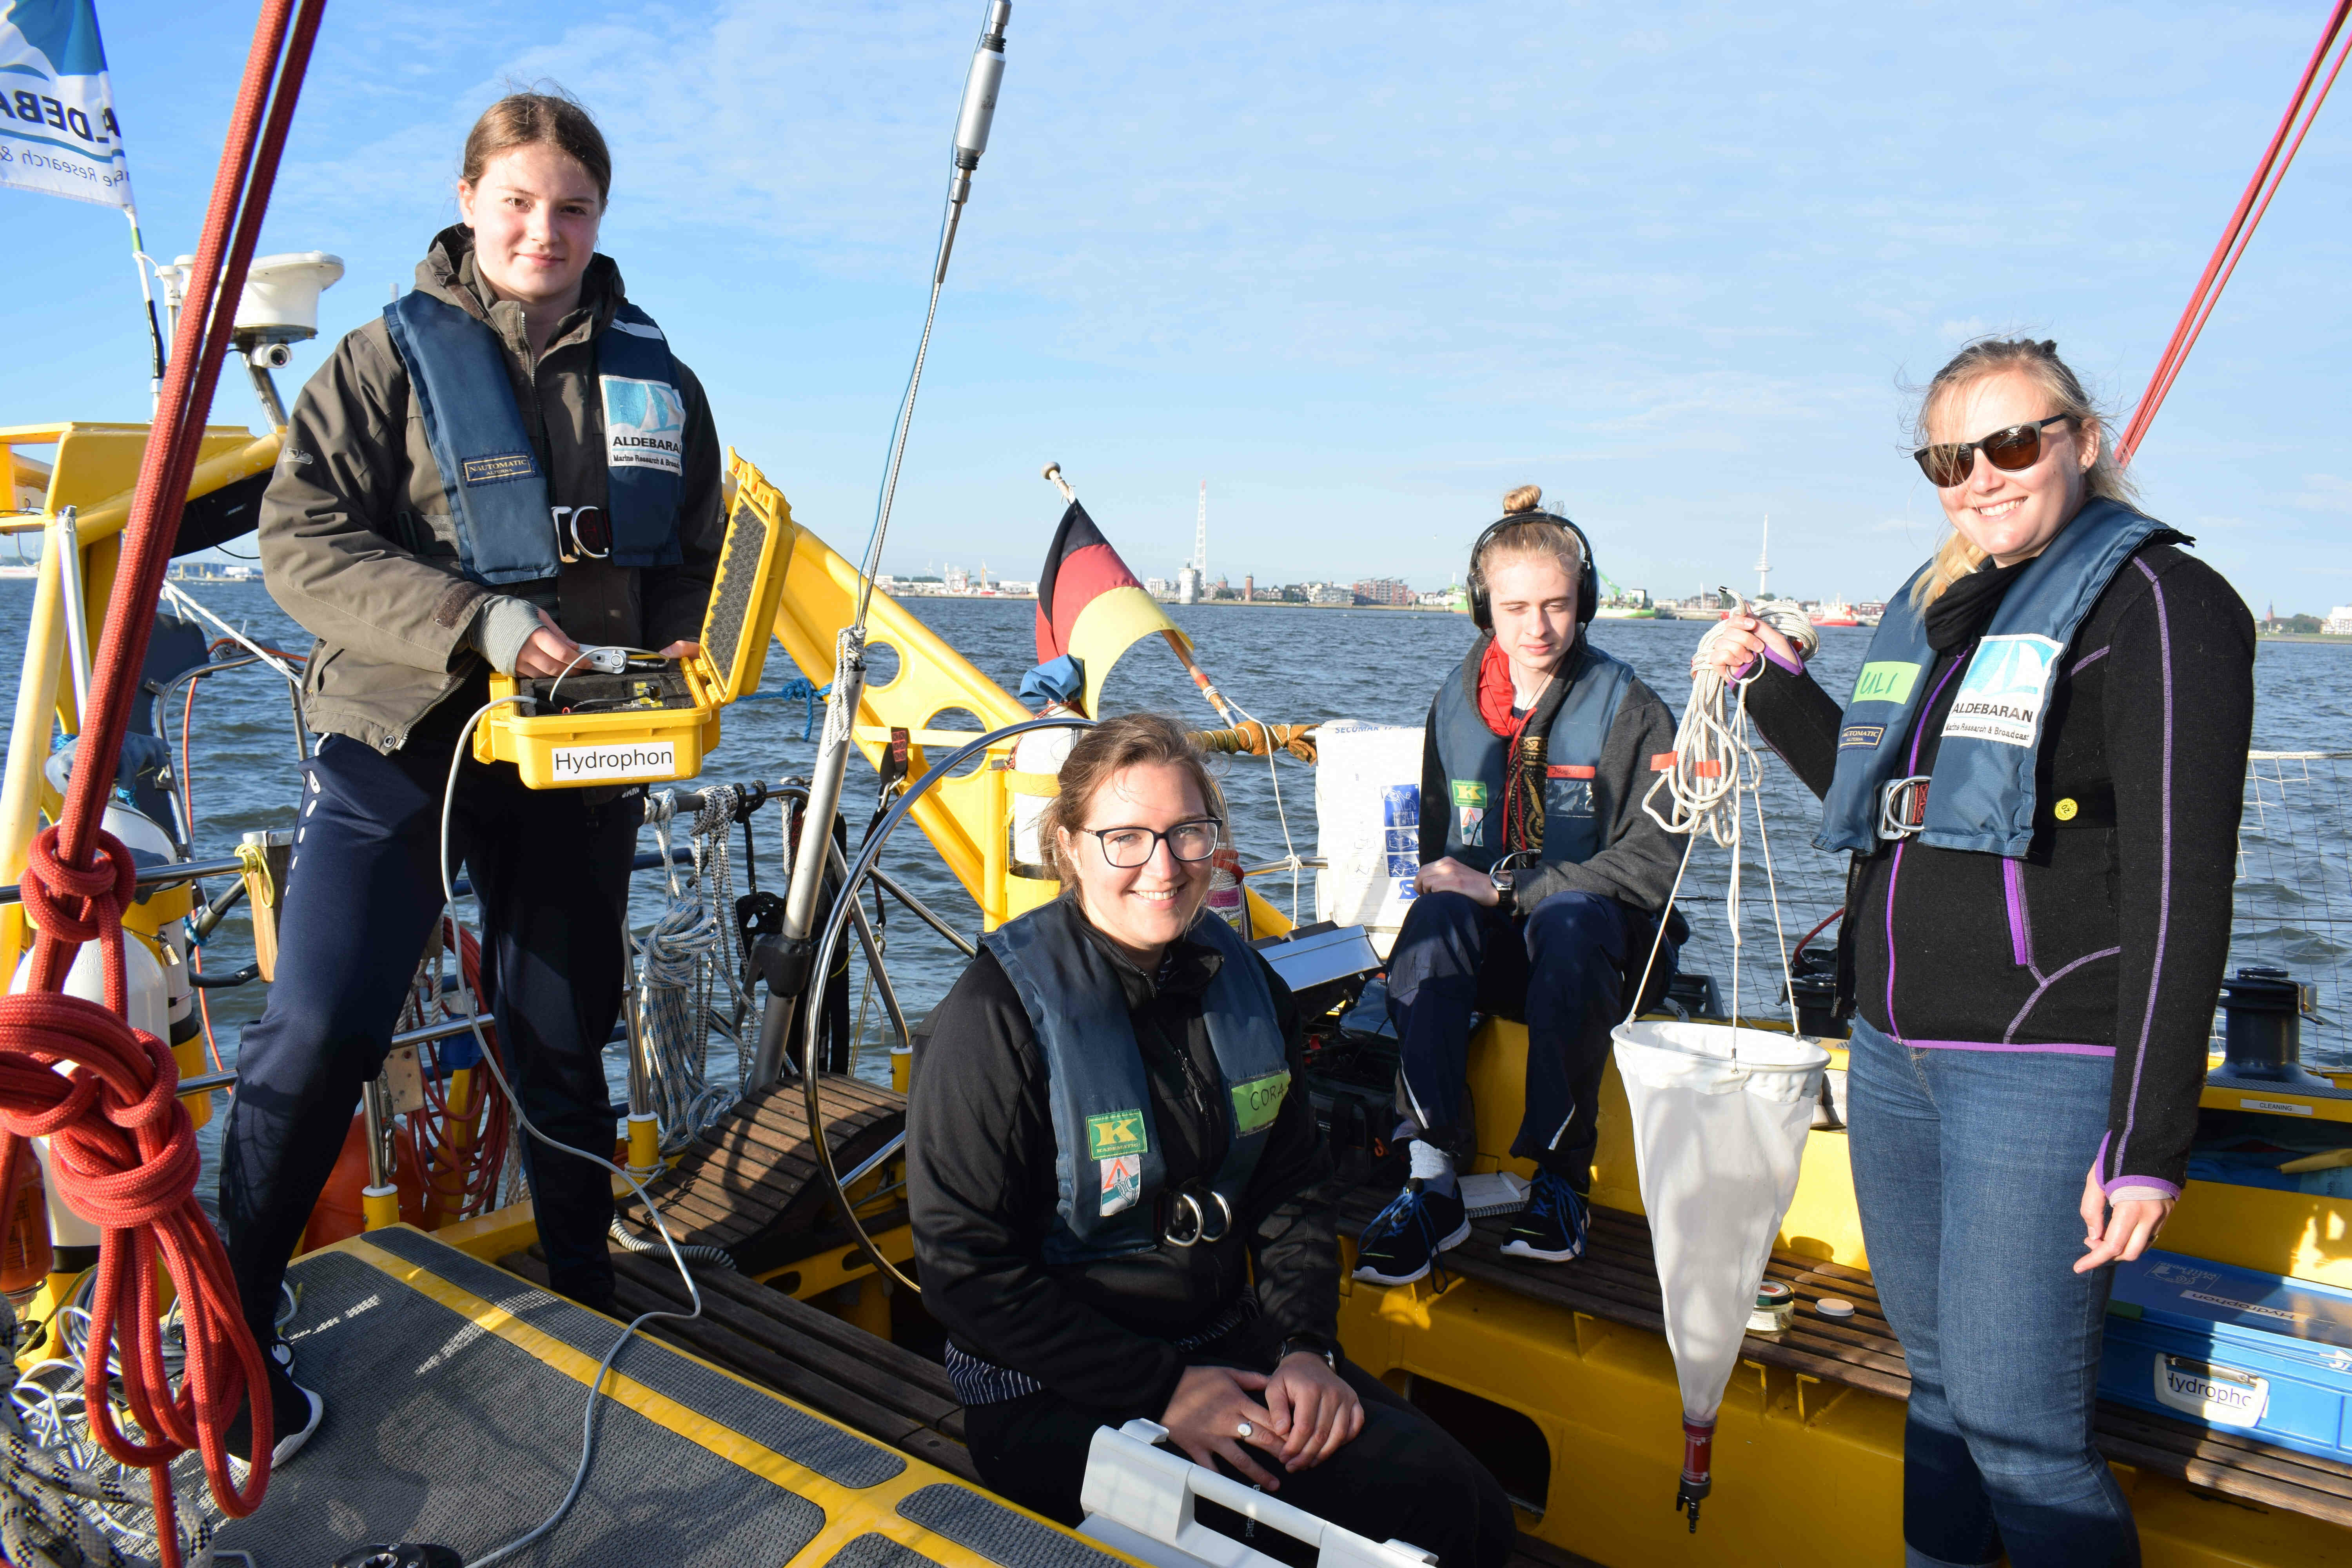 SchülerInnen des AAG Cuxhaven beim Meereswettbewerb auf dem Forschungsschiff ALDEBARAN